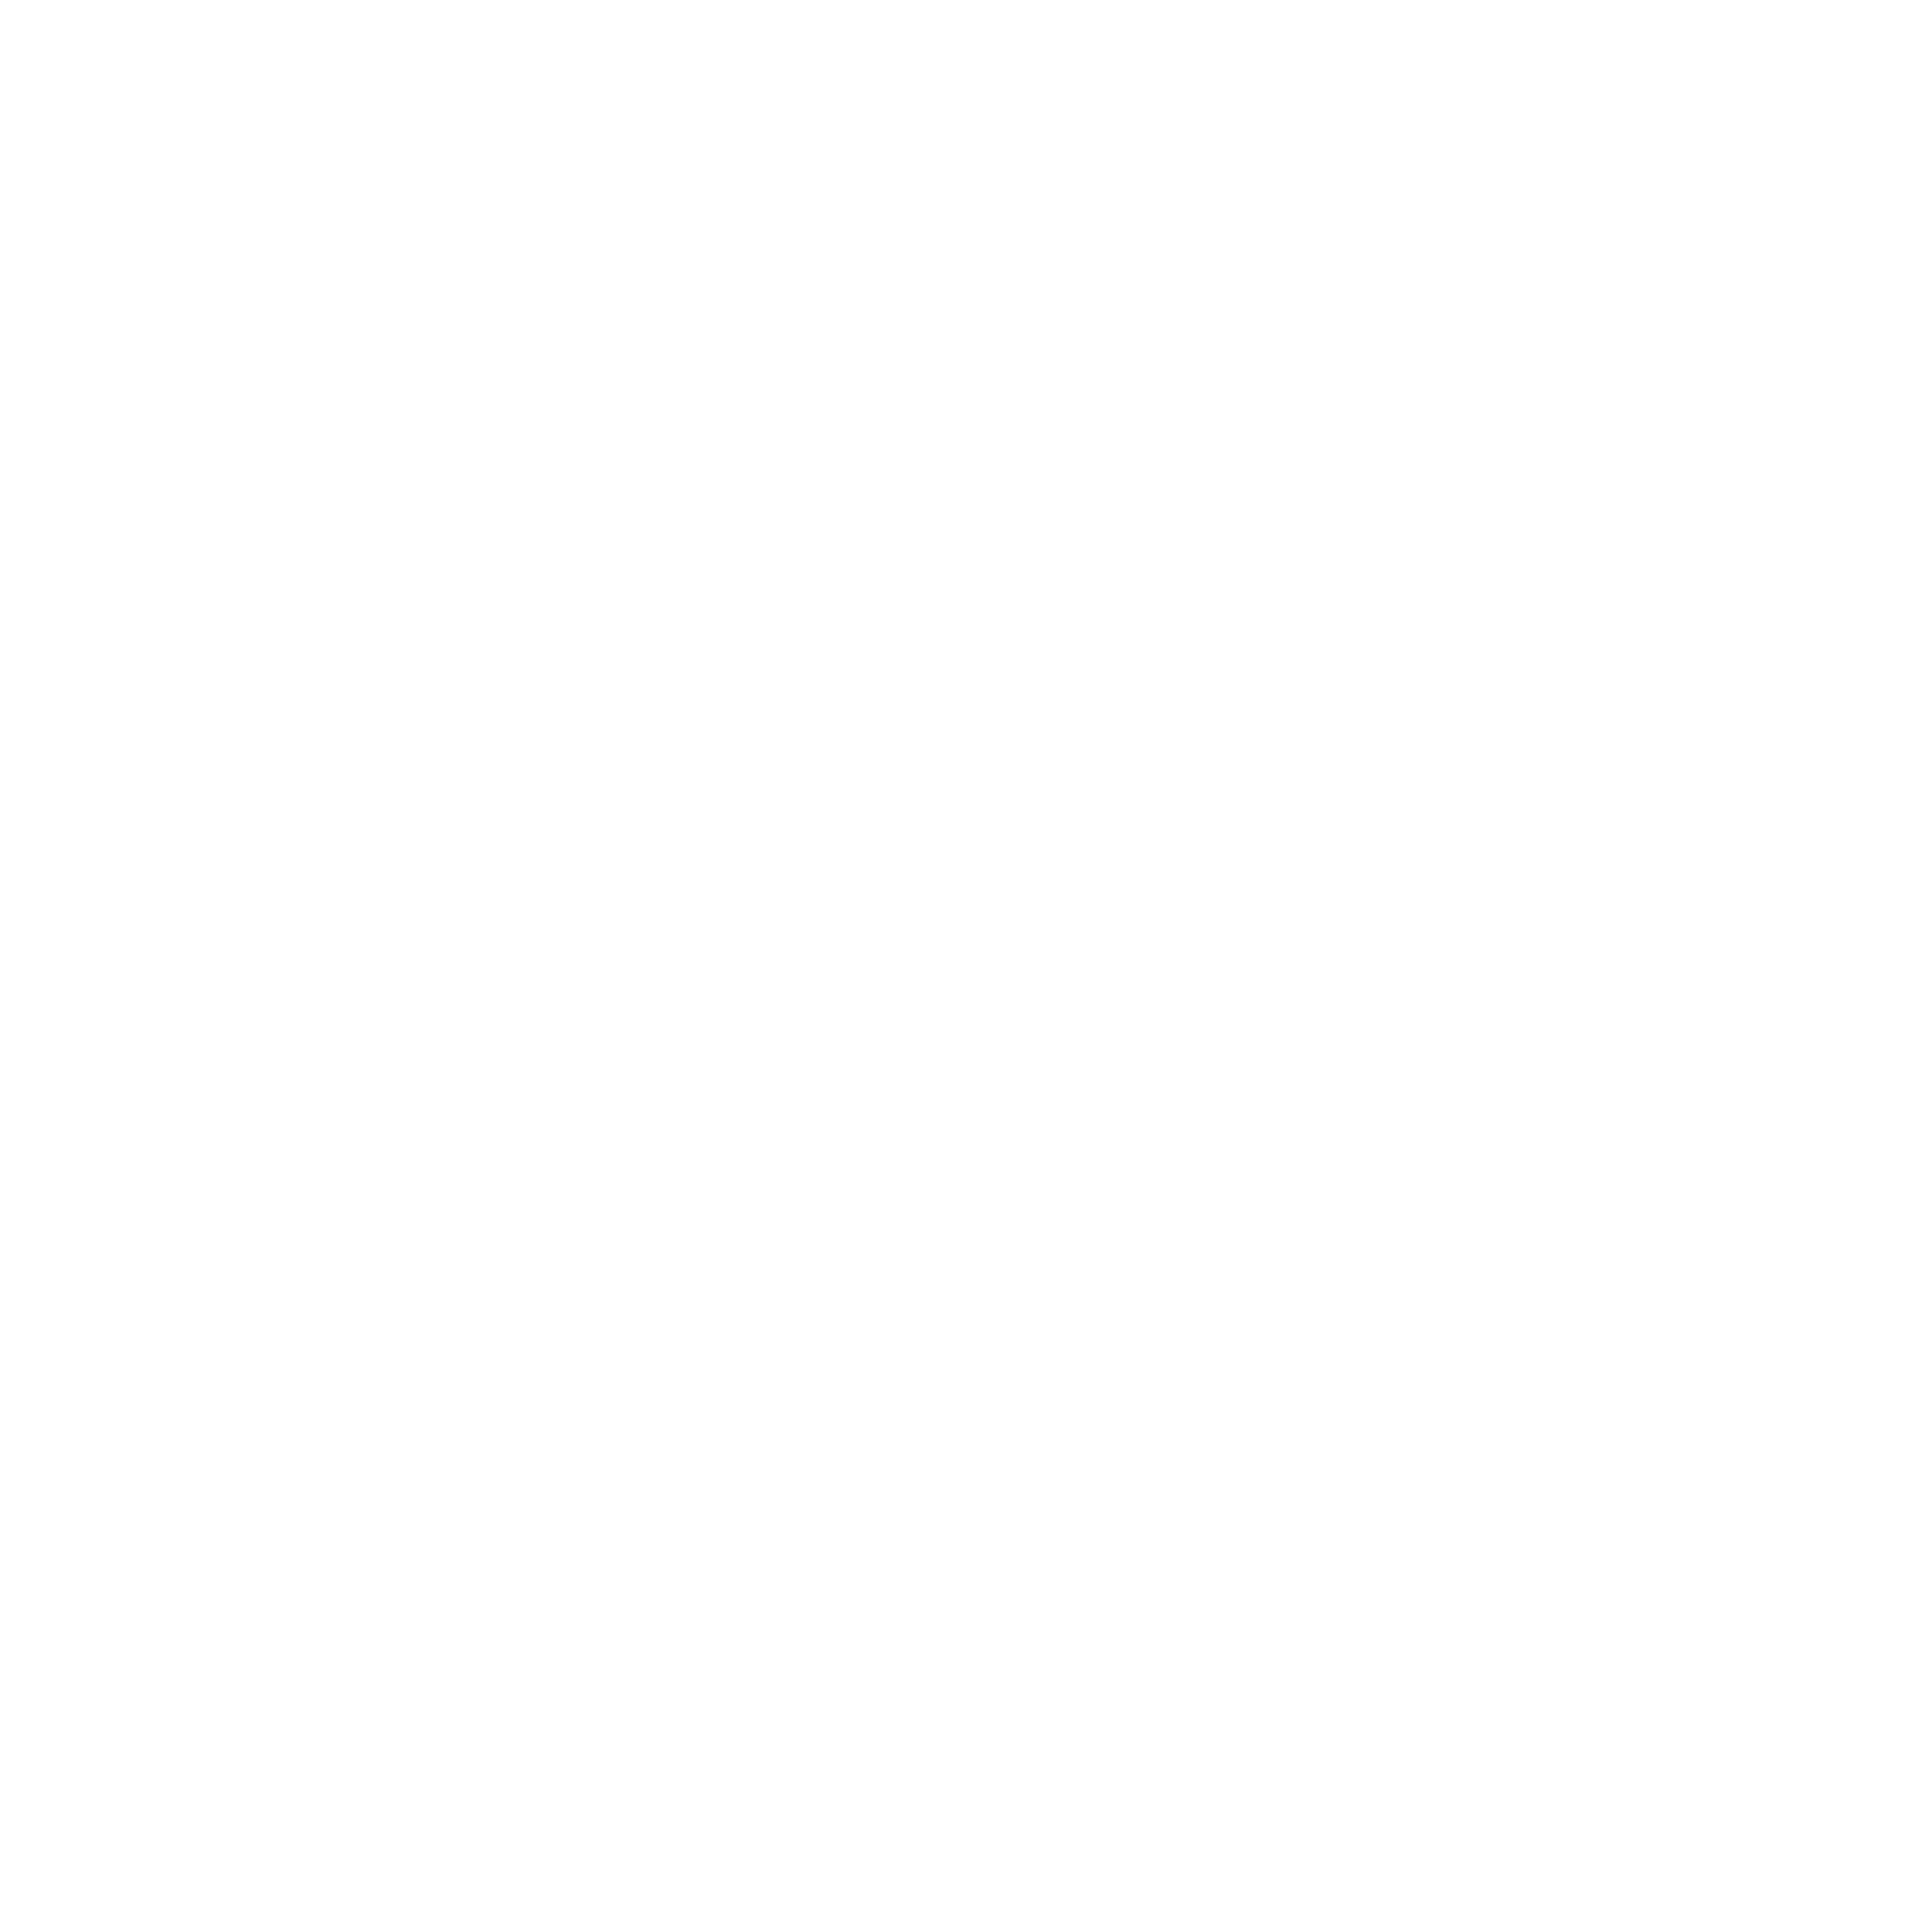 RV Institute of Legal Studies